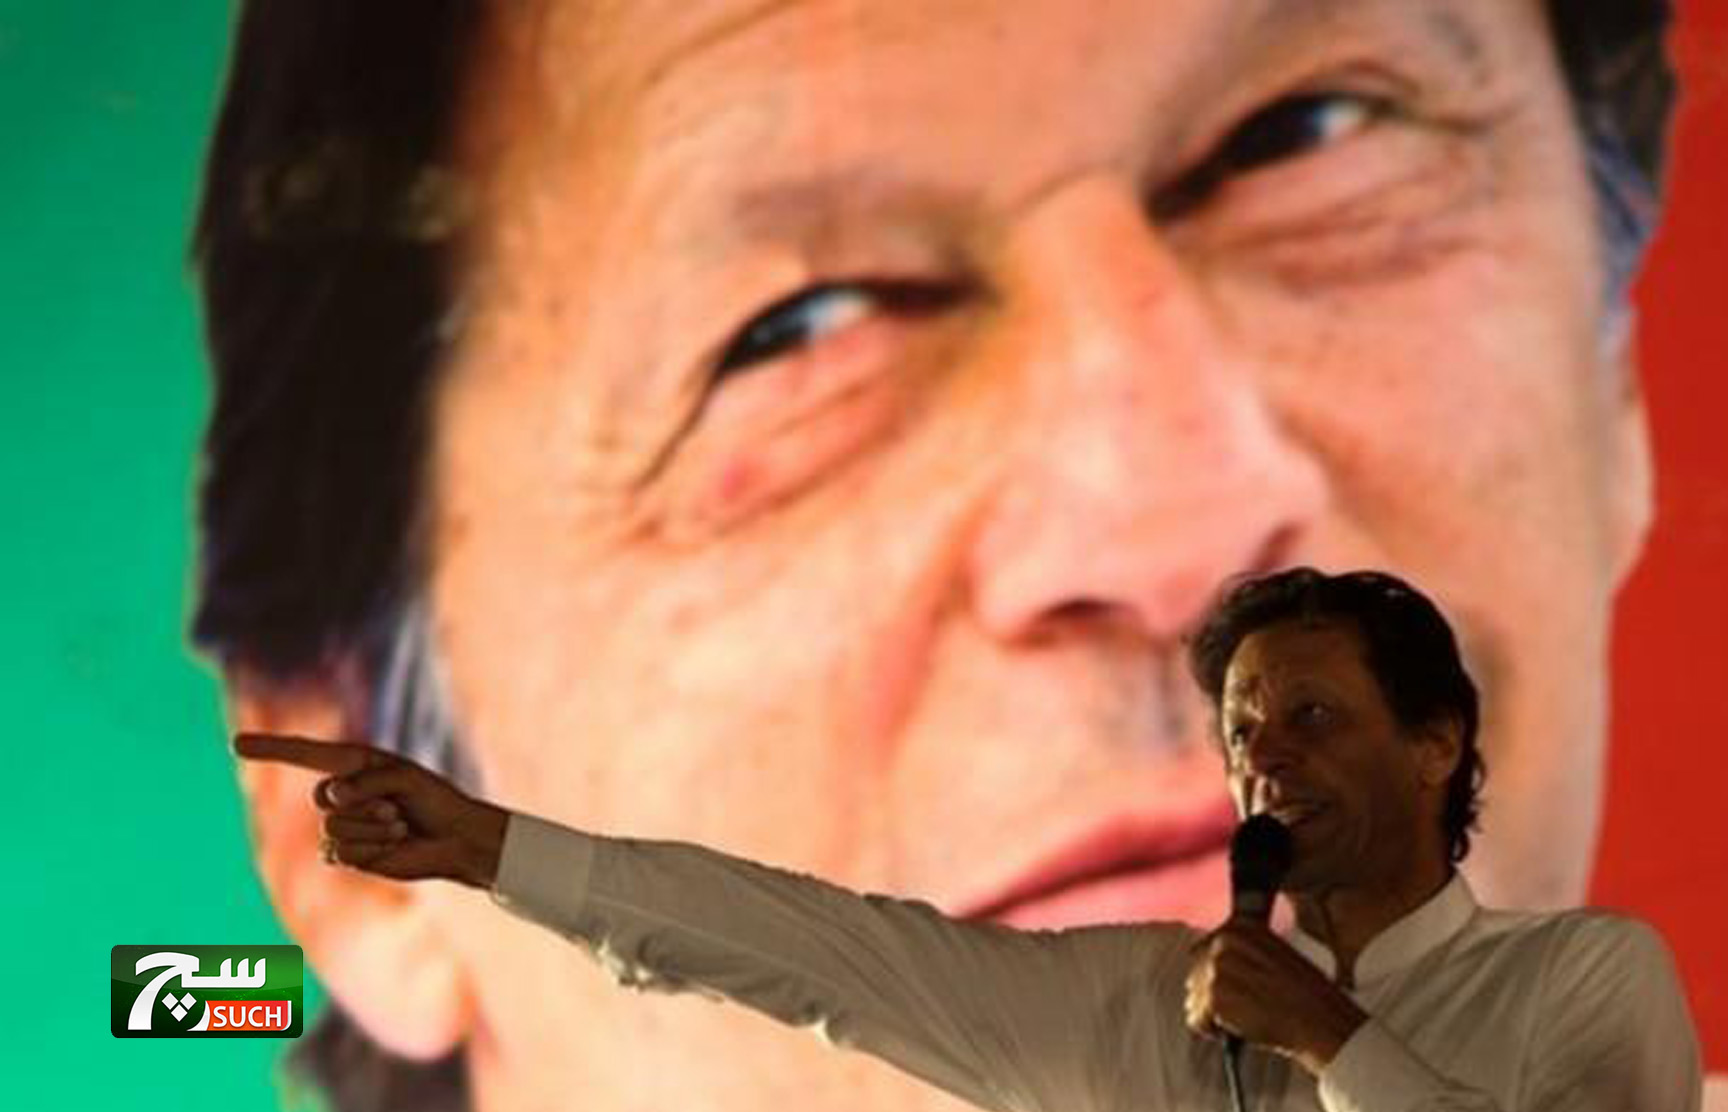 باكستان تطلق حملة أمنية لمواجهة التطرف بمواقع التواصل